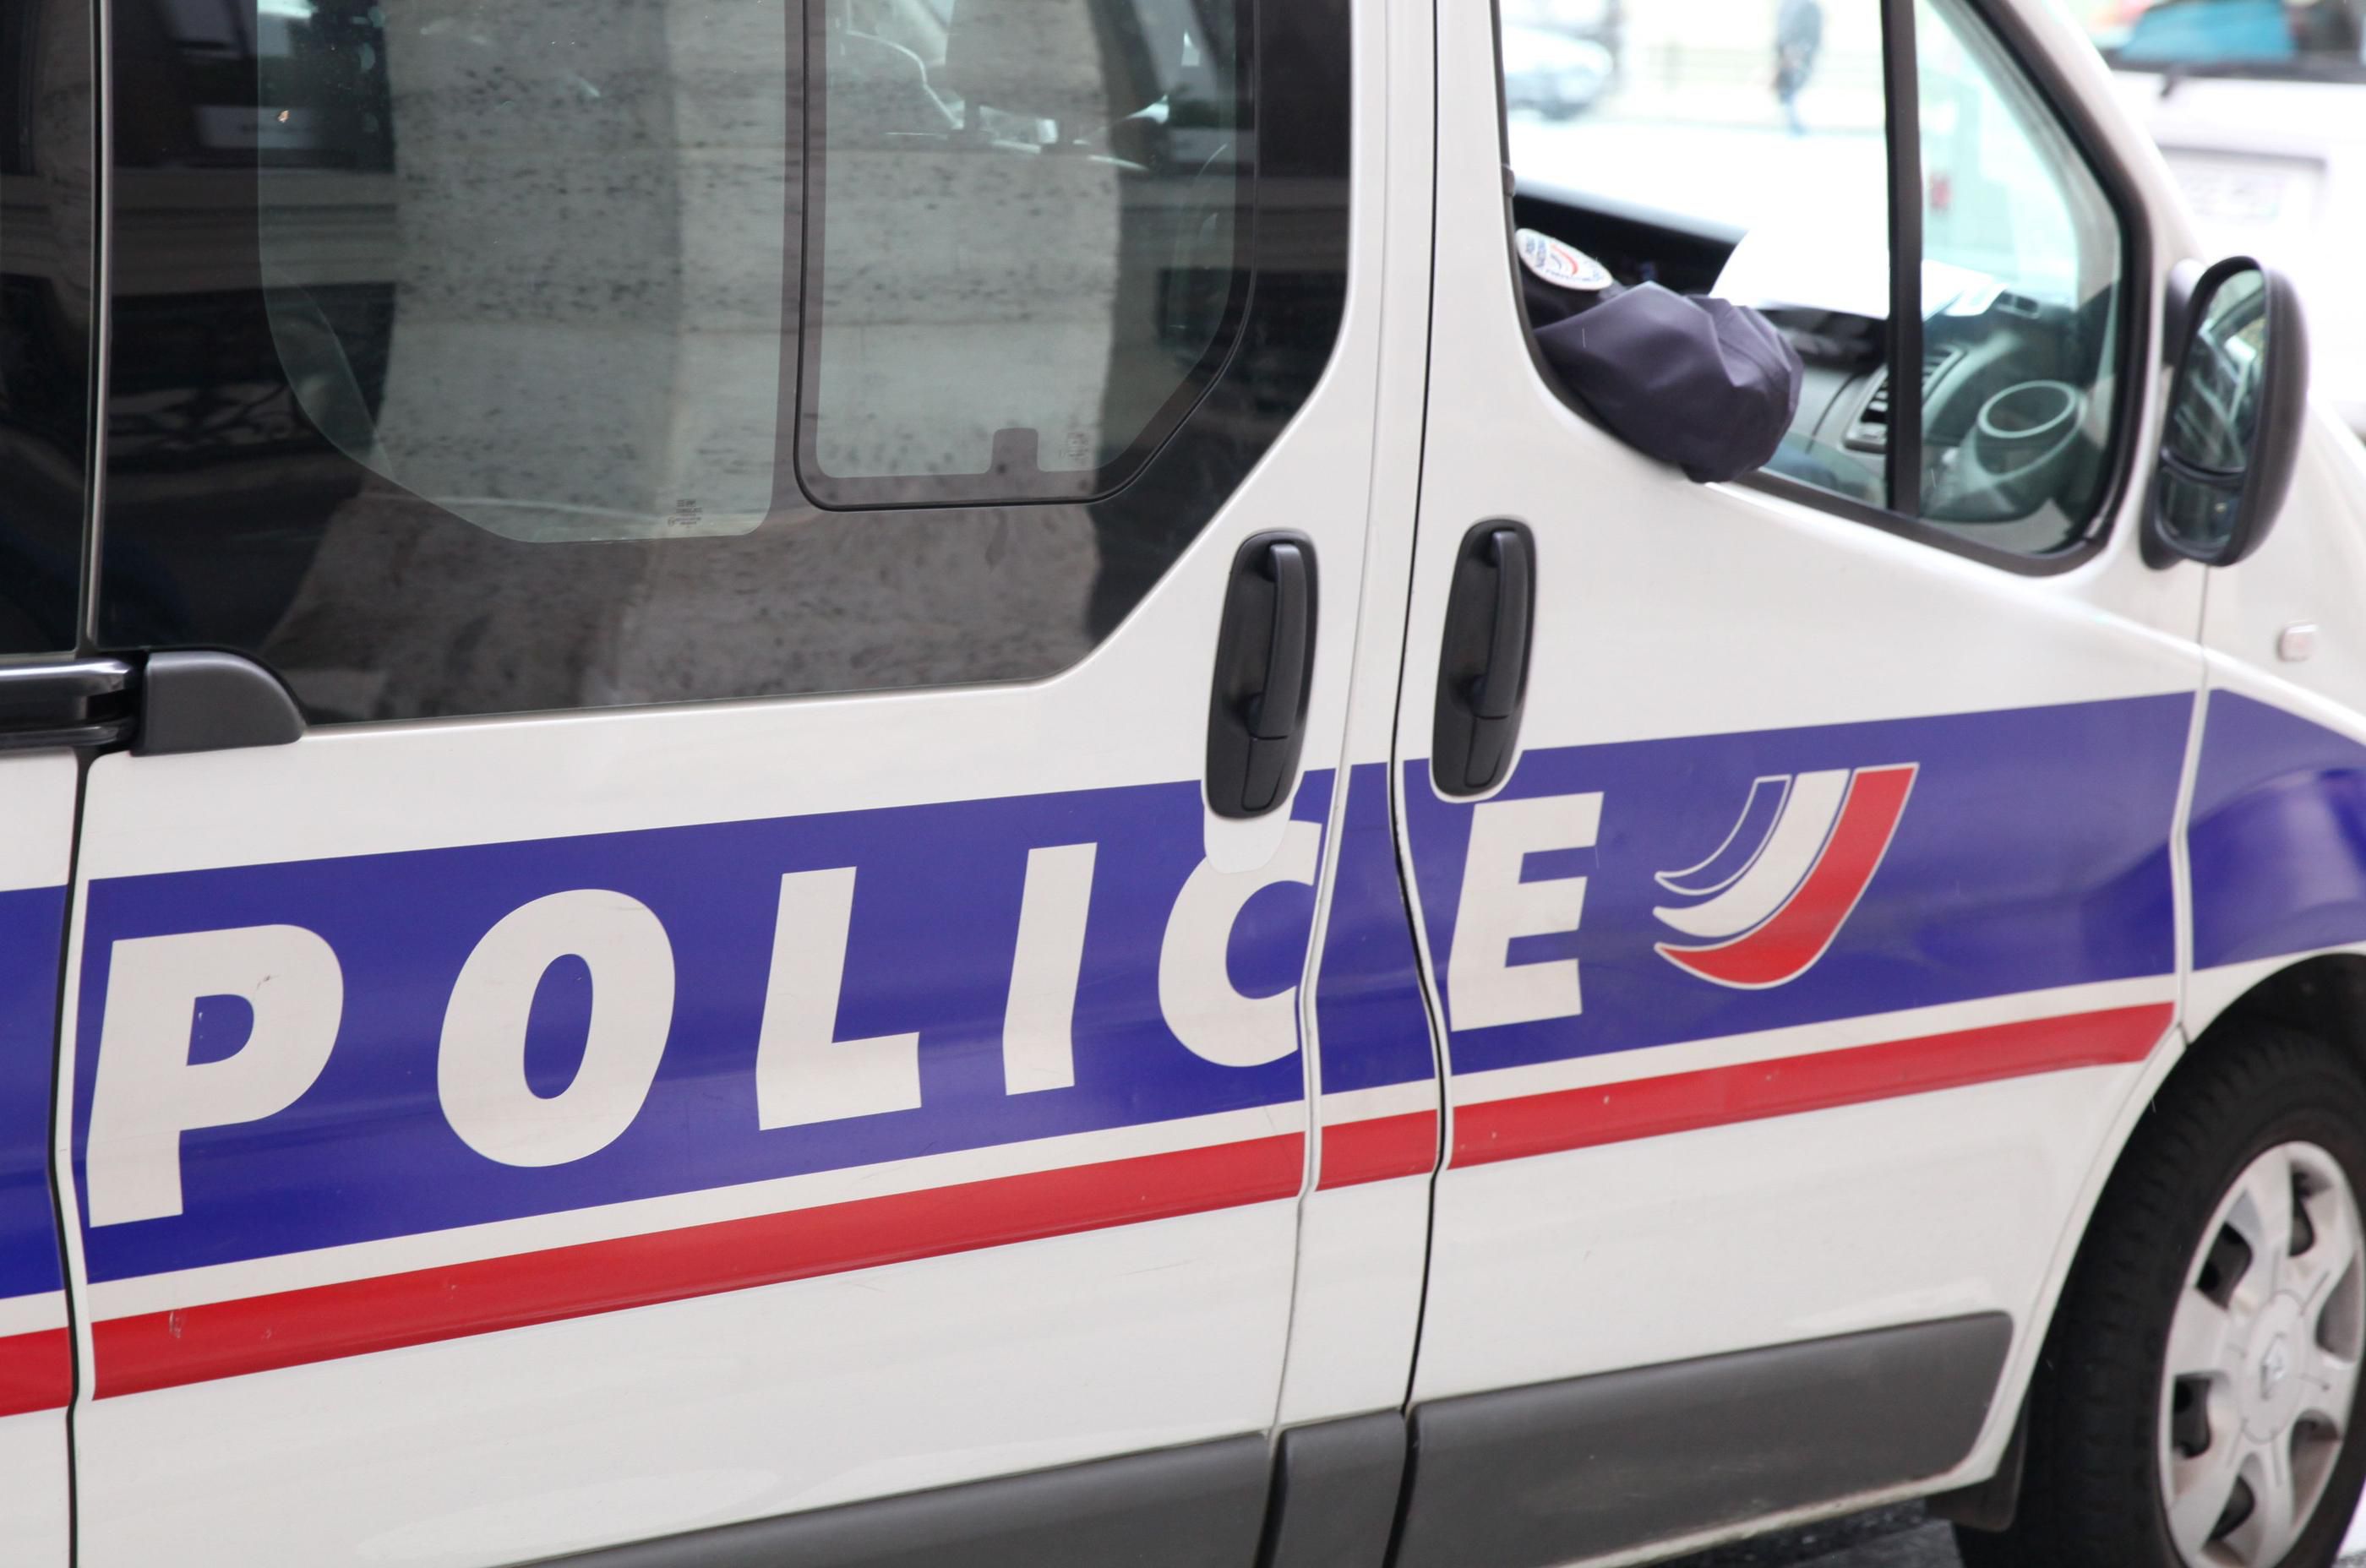 Saint-Ouen : un enlèvement et une tentative d’homicide dans la même journée